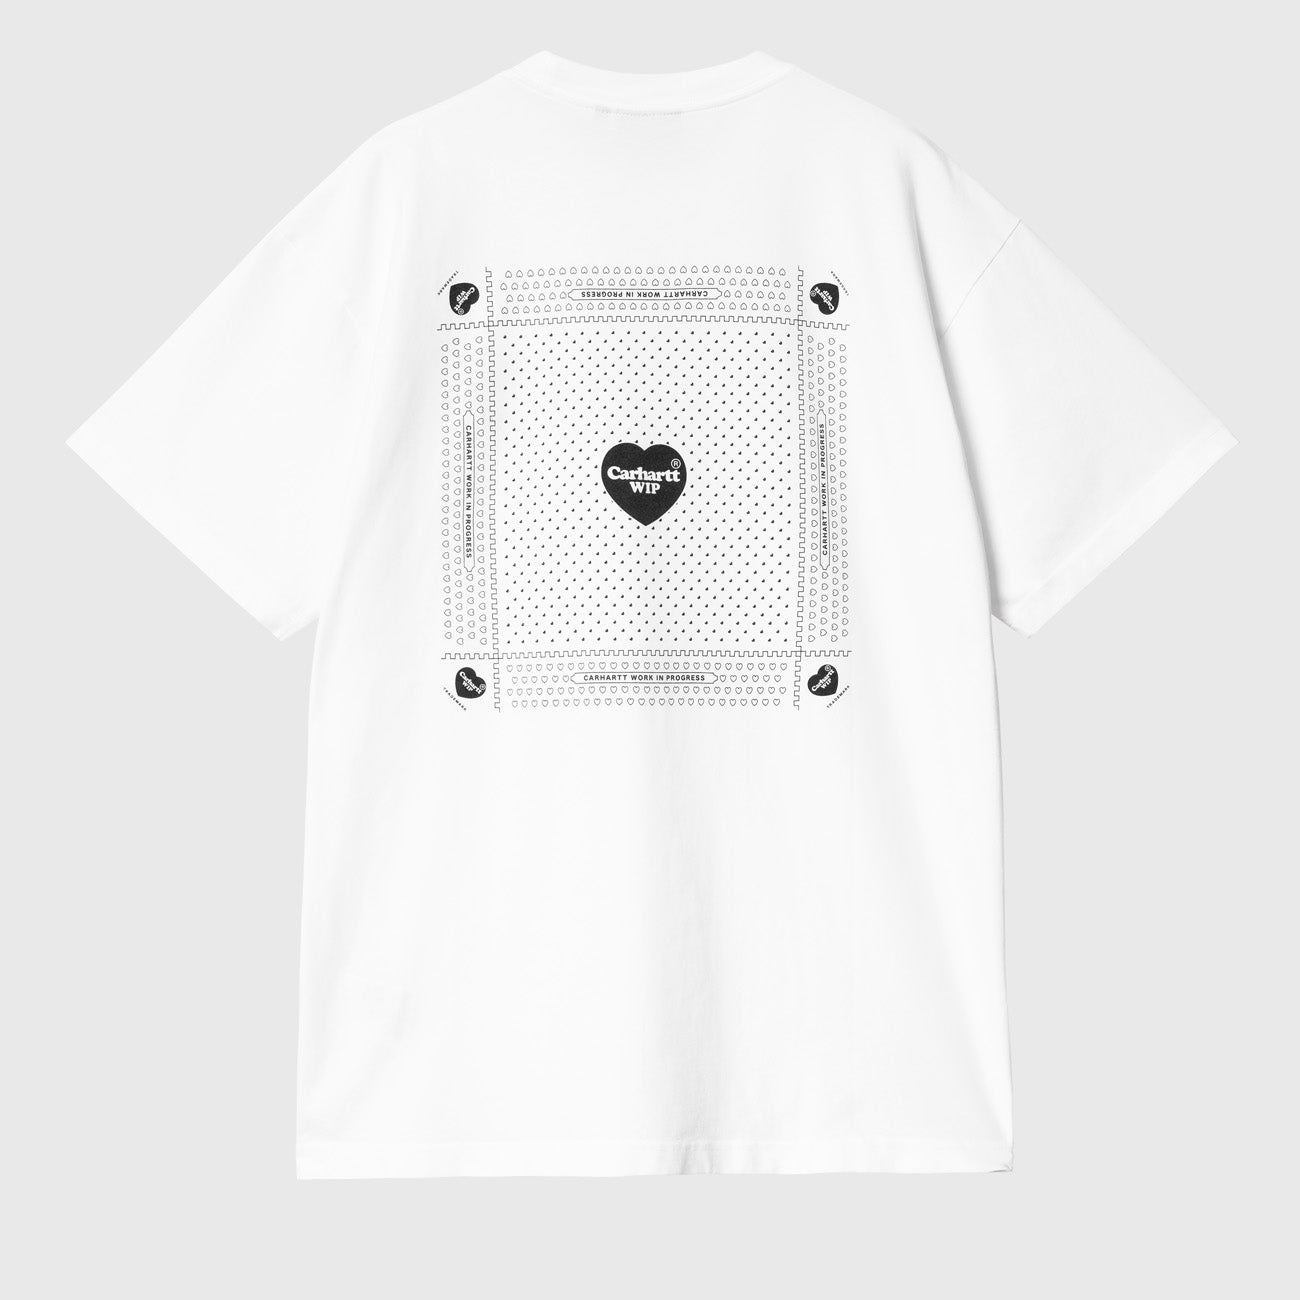 Carhartt WIP S/S Heart Bandana T-Shirt Herren White Black